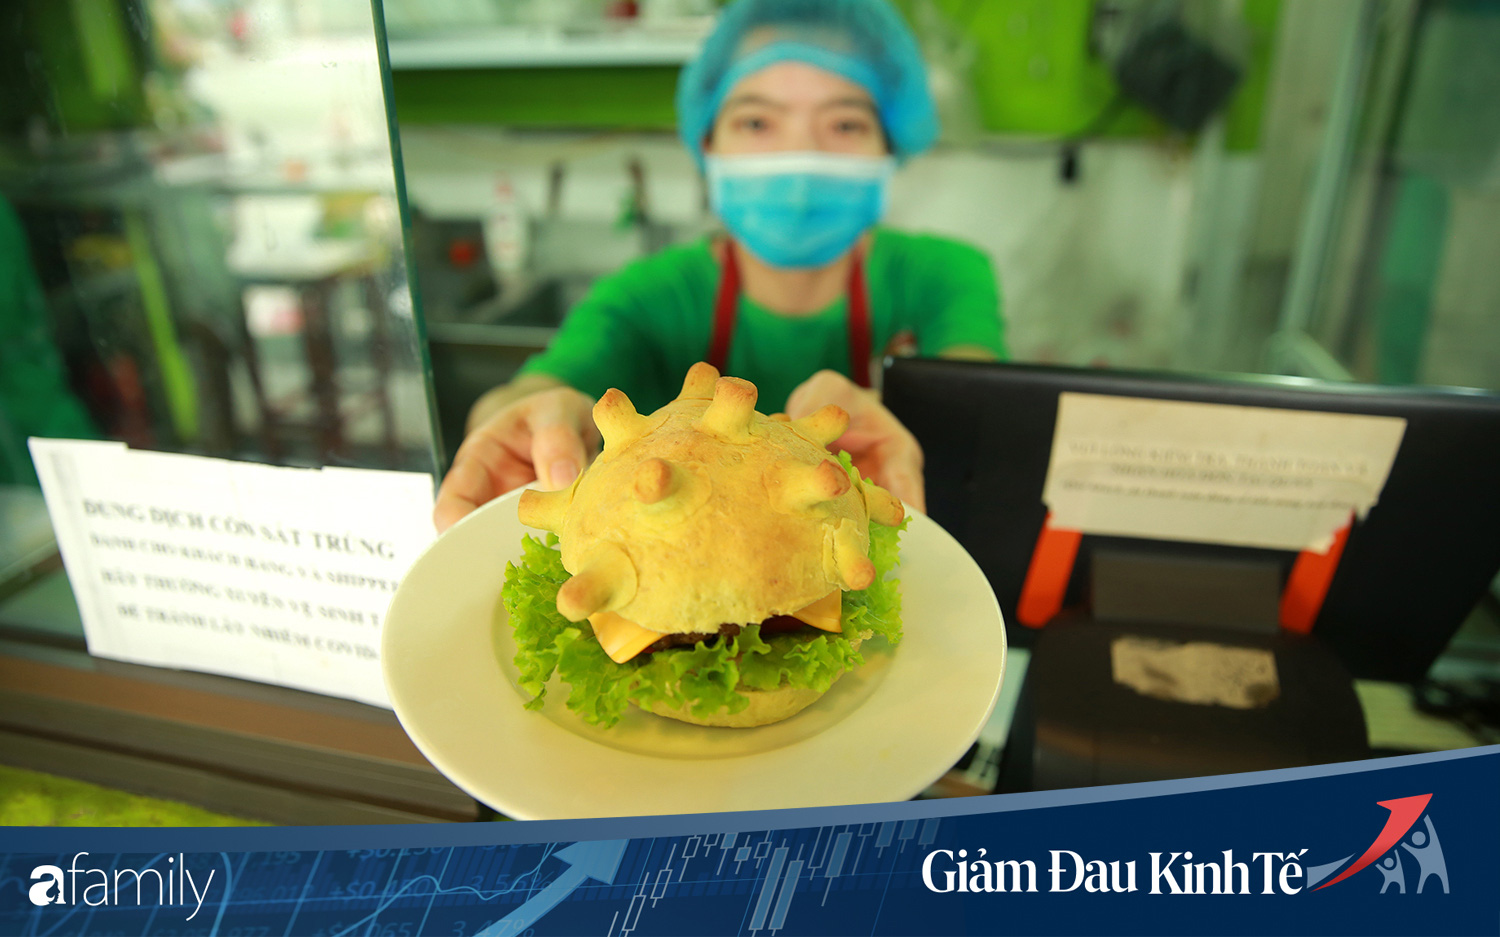 Chuyện lạ có thật ở Hà Nội: Cửa hàng làm bánh burger... corona nhằm truyền cảm hứng chống dịch